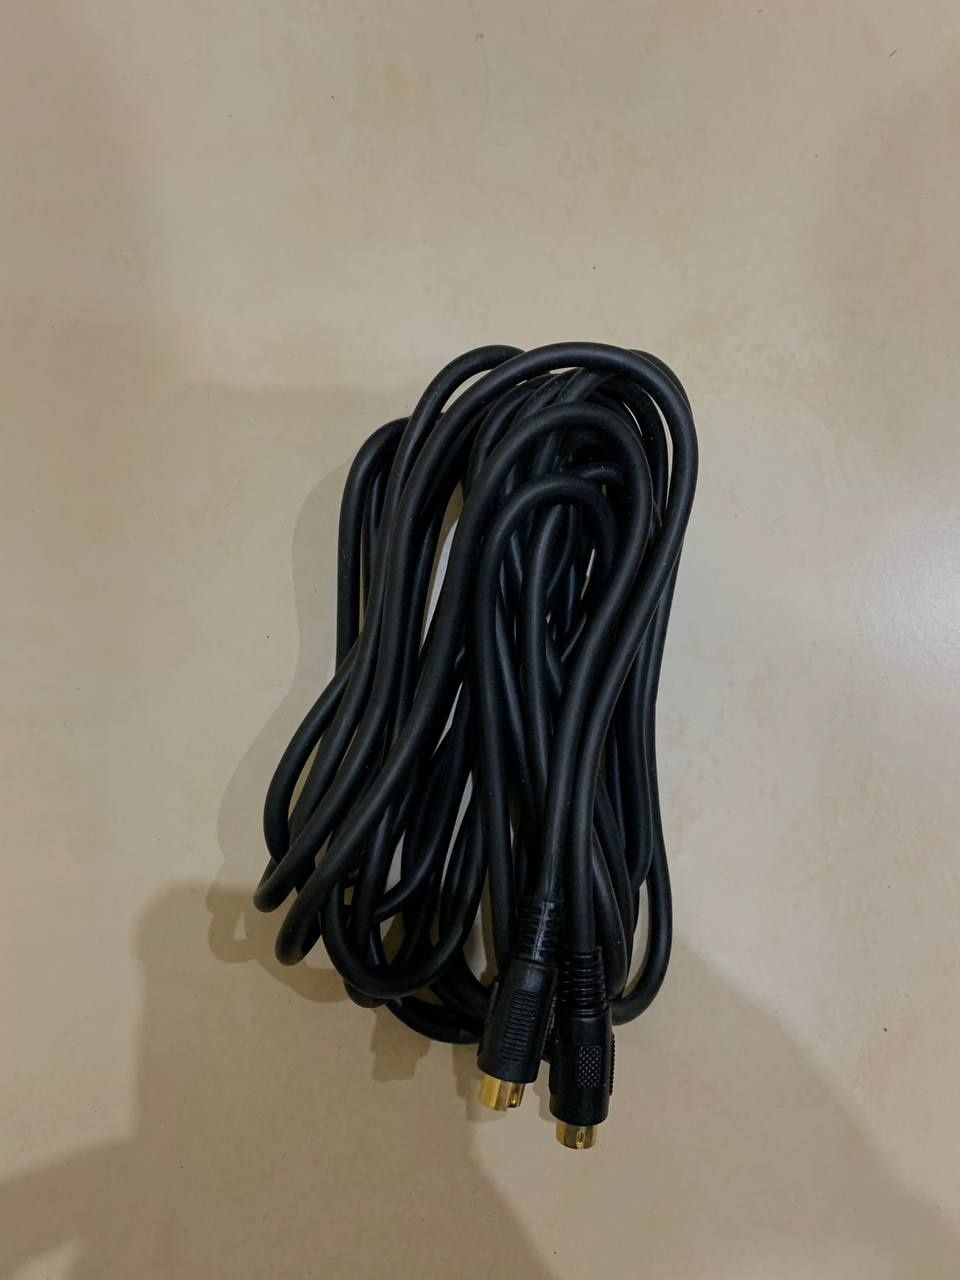 Продам кабель удлинитель S-Video, 3 и 5 метров